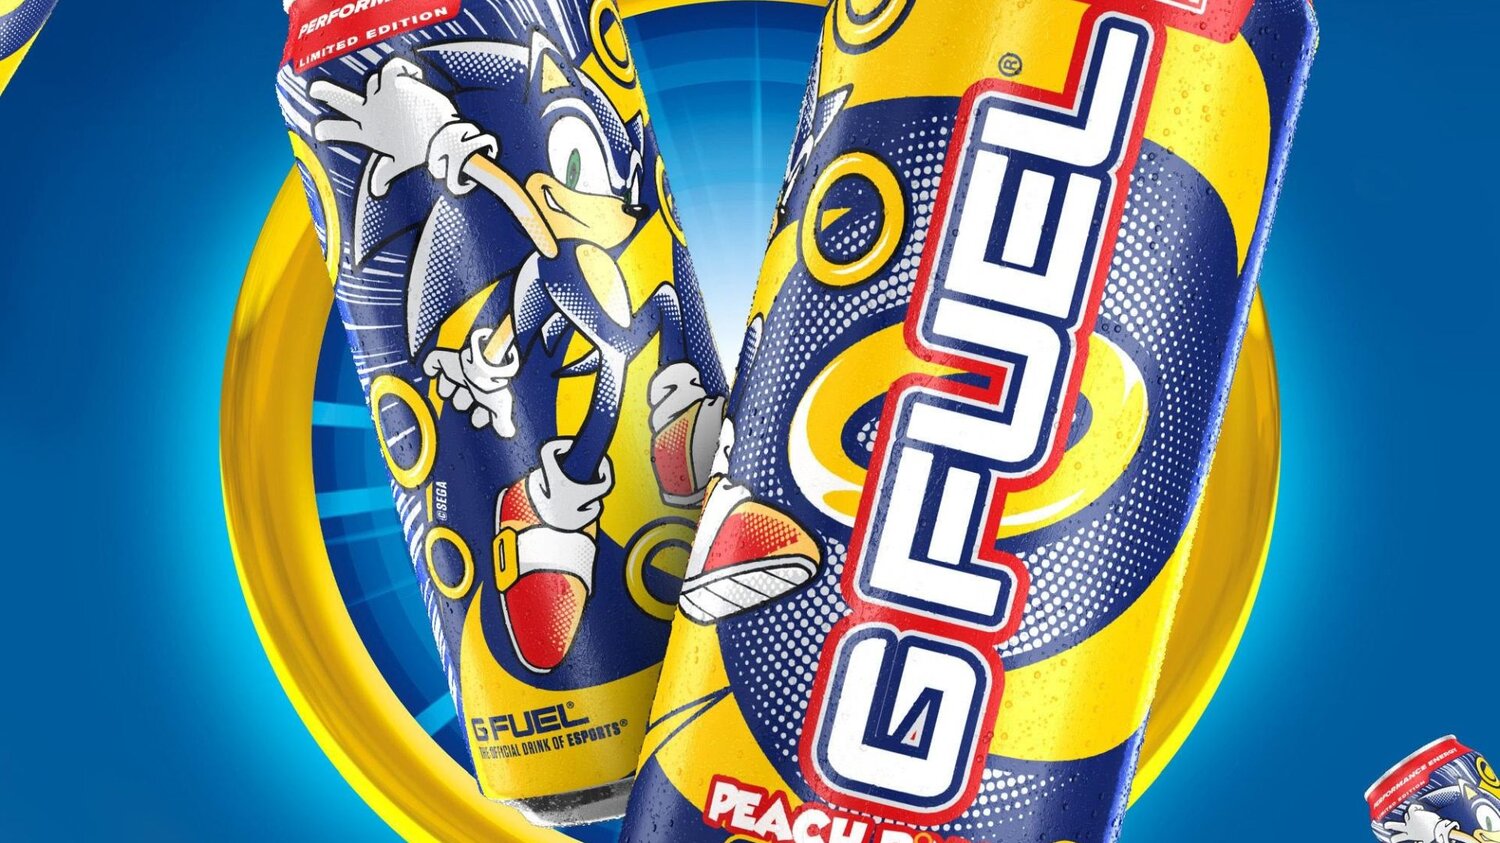 Foto de Sonic the Hedgehog Lanza su Bebida Energética, Junto a G FUEL